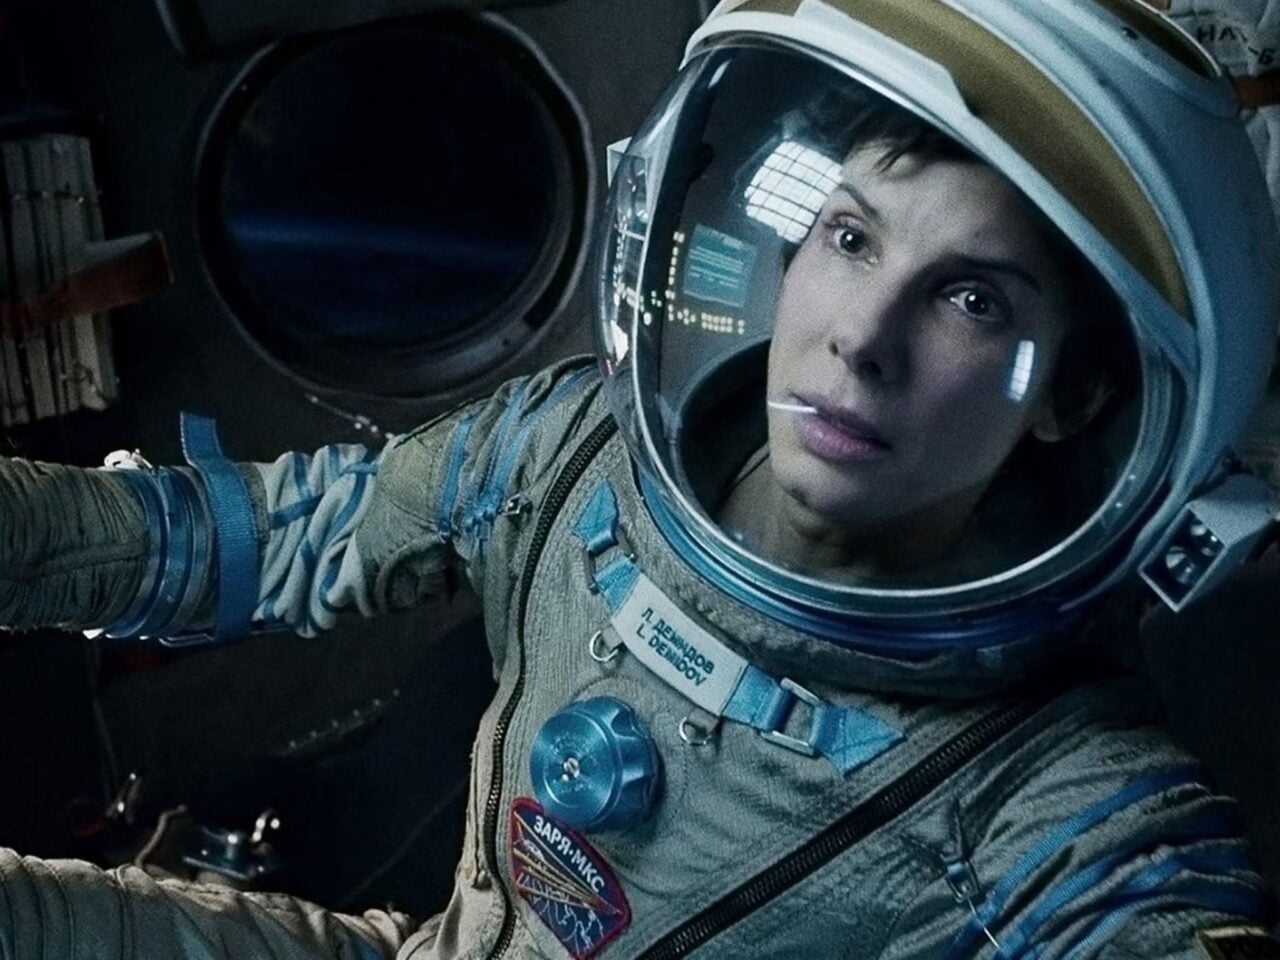 Sandra Bullock filmy. Astronautka w kombinezonie kosmicznym patrzy przed siebie, znajdując się wewnątrz statku kosmicznego.